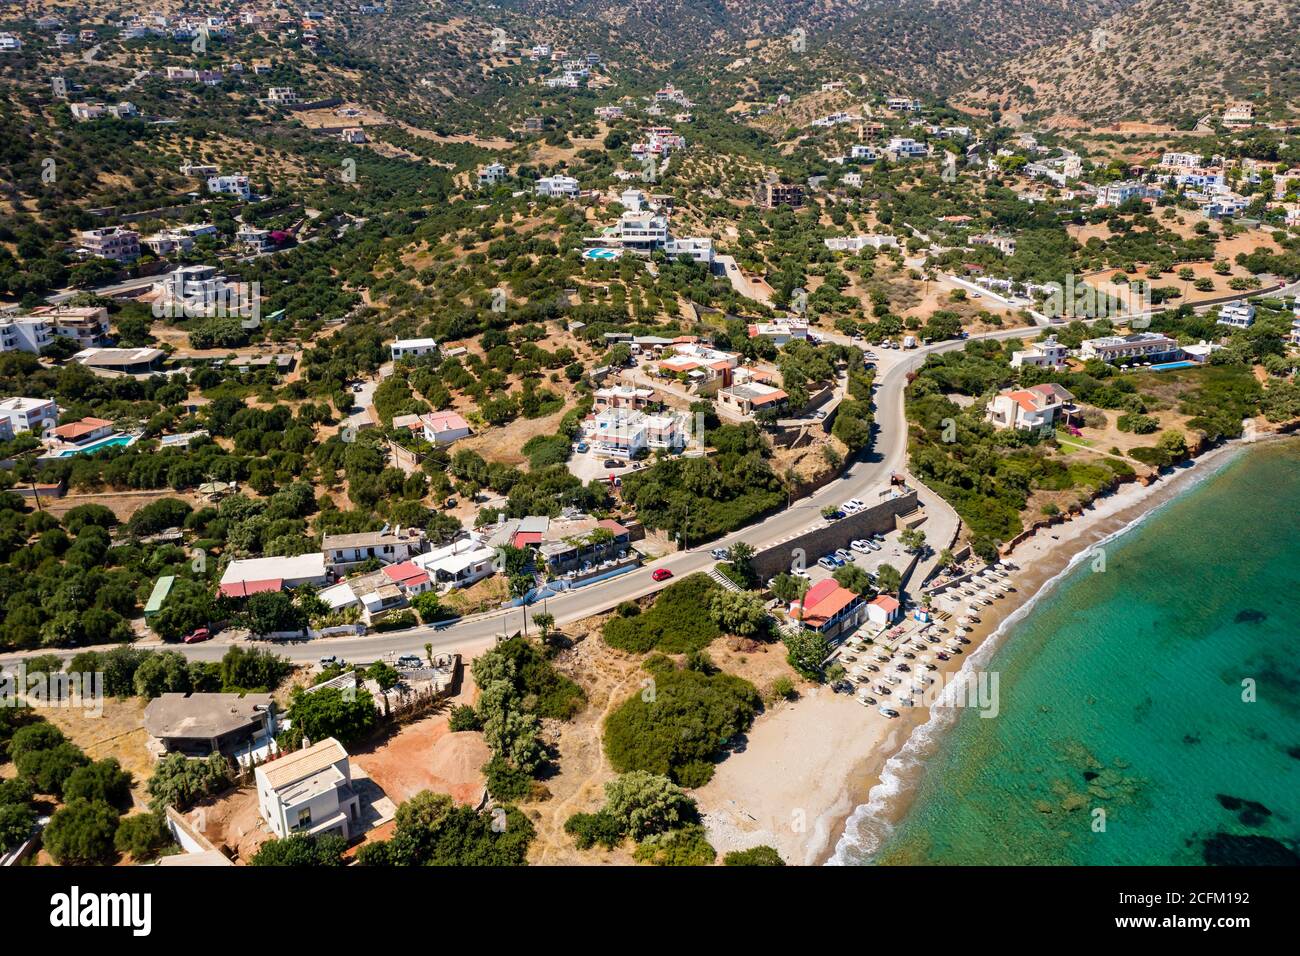 Vue aérienne par drone d'une plage entourée d'un océan profond et clair (plage de Haviana, Crète, Grèce) Banque D'Images